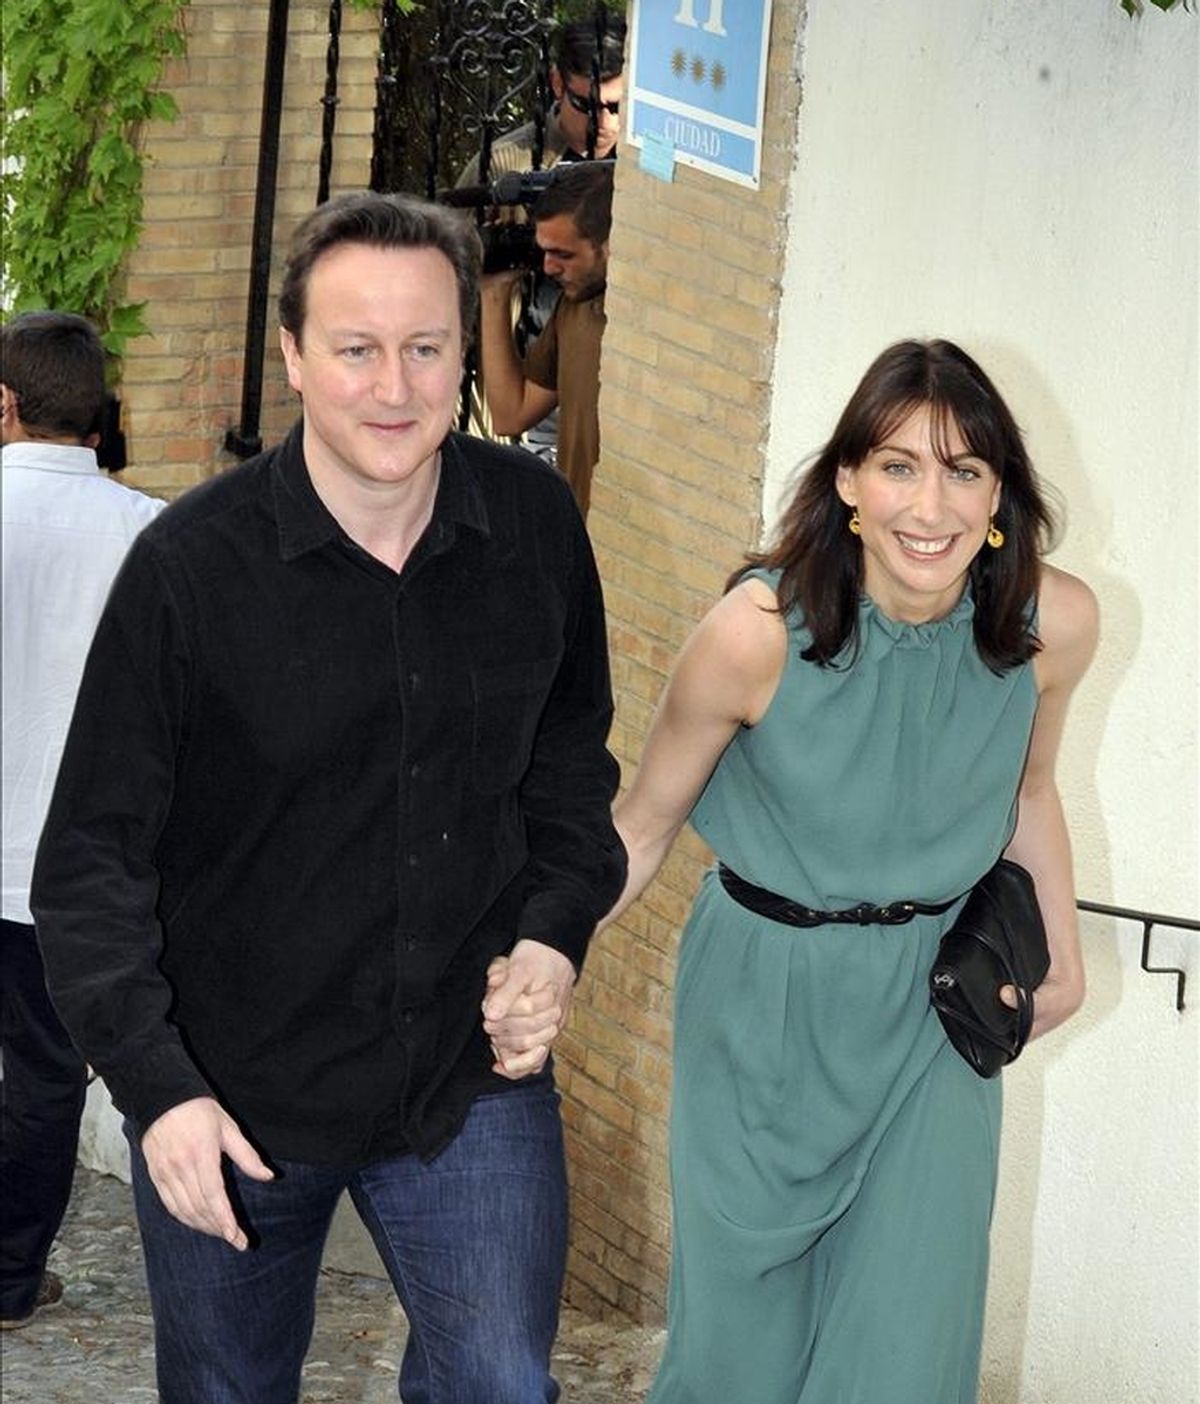 El primer ministro británico, David Cameron ha descartado el frac como atuendo para acudir a la boda real. En la imagen, Cameron y su mujer Samantha, salen del hotel del barrio del Realejo en Granada donde se alojaron durante su visita privada el 7 de abril pasado. EFE/Archivo